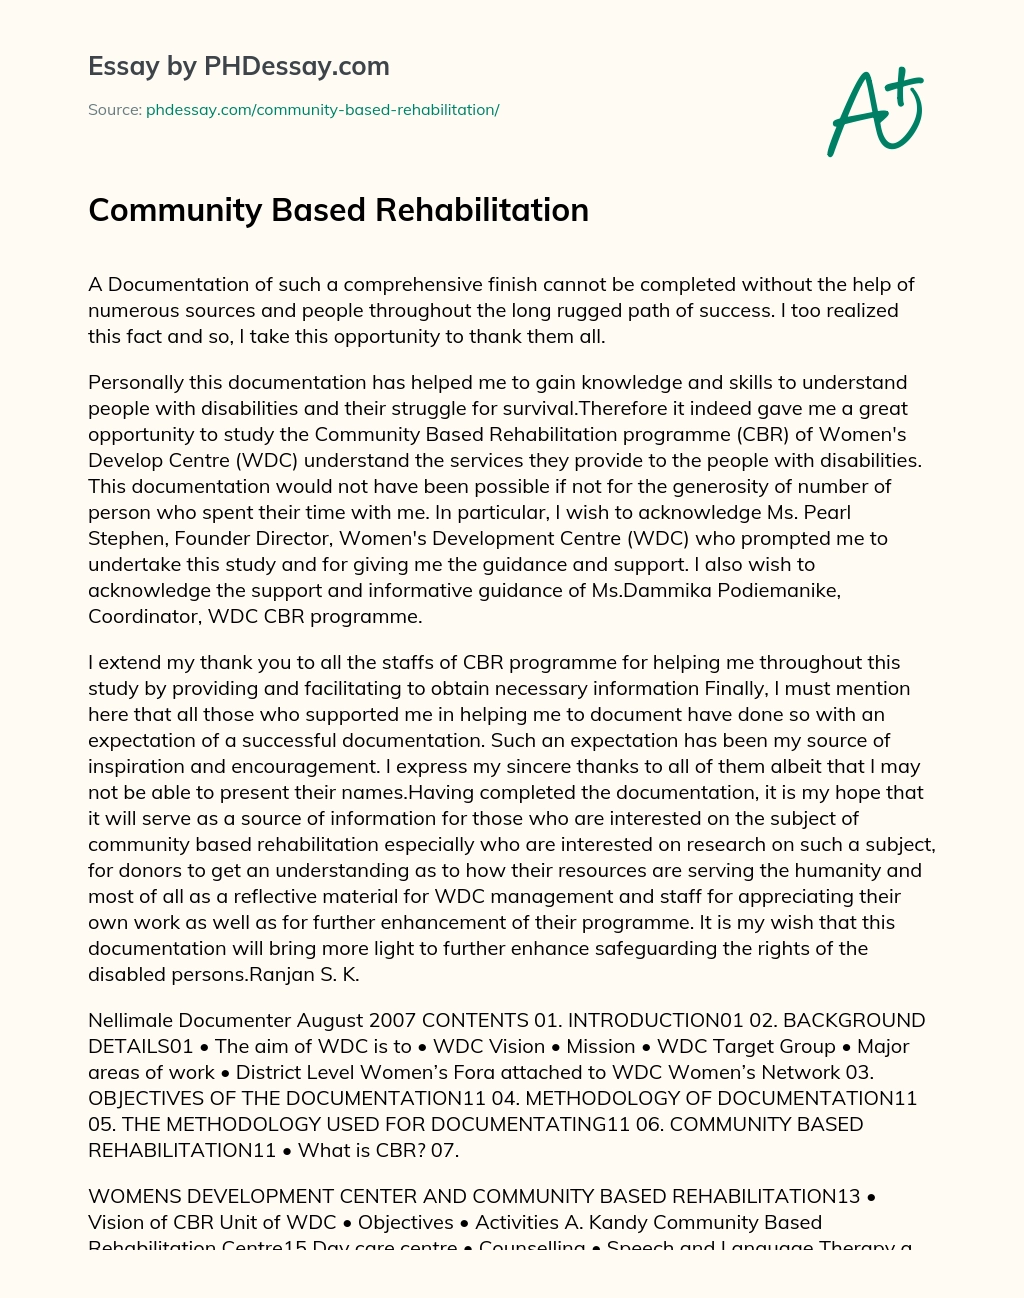 Community based rehabilitation essay